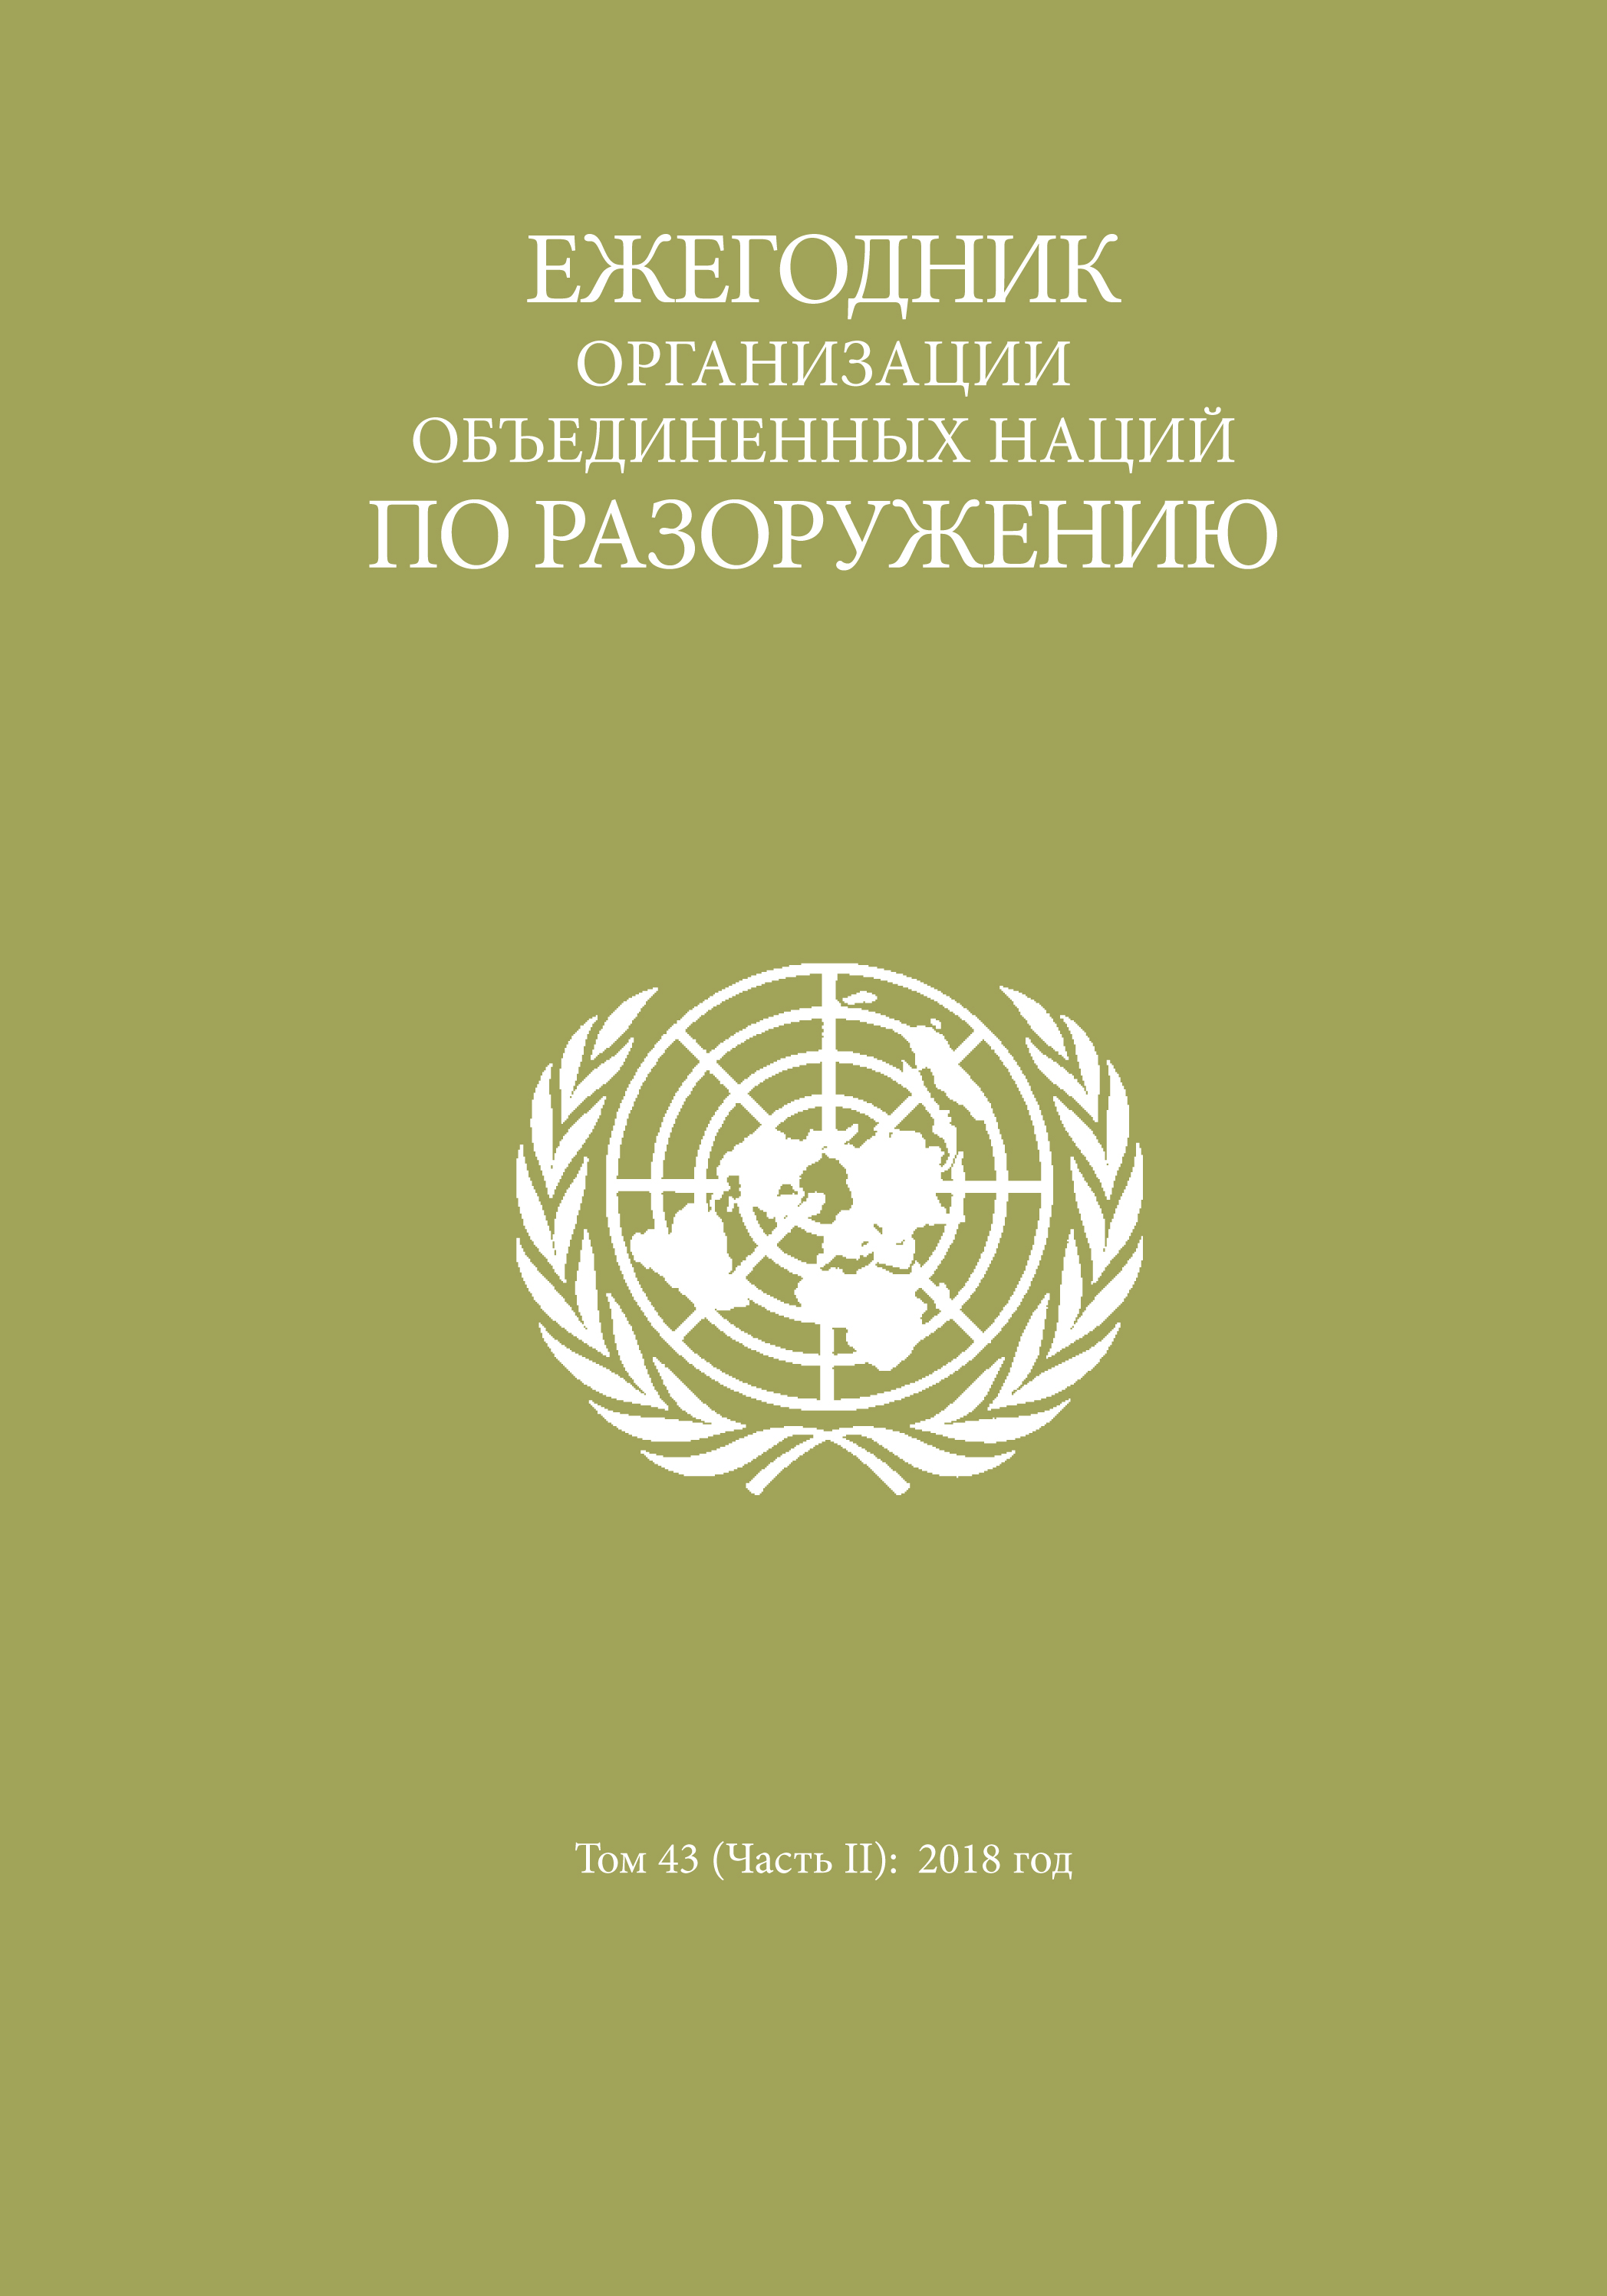 image of Ежегодник организации объединенных наций по разоружению 2018: Часть II